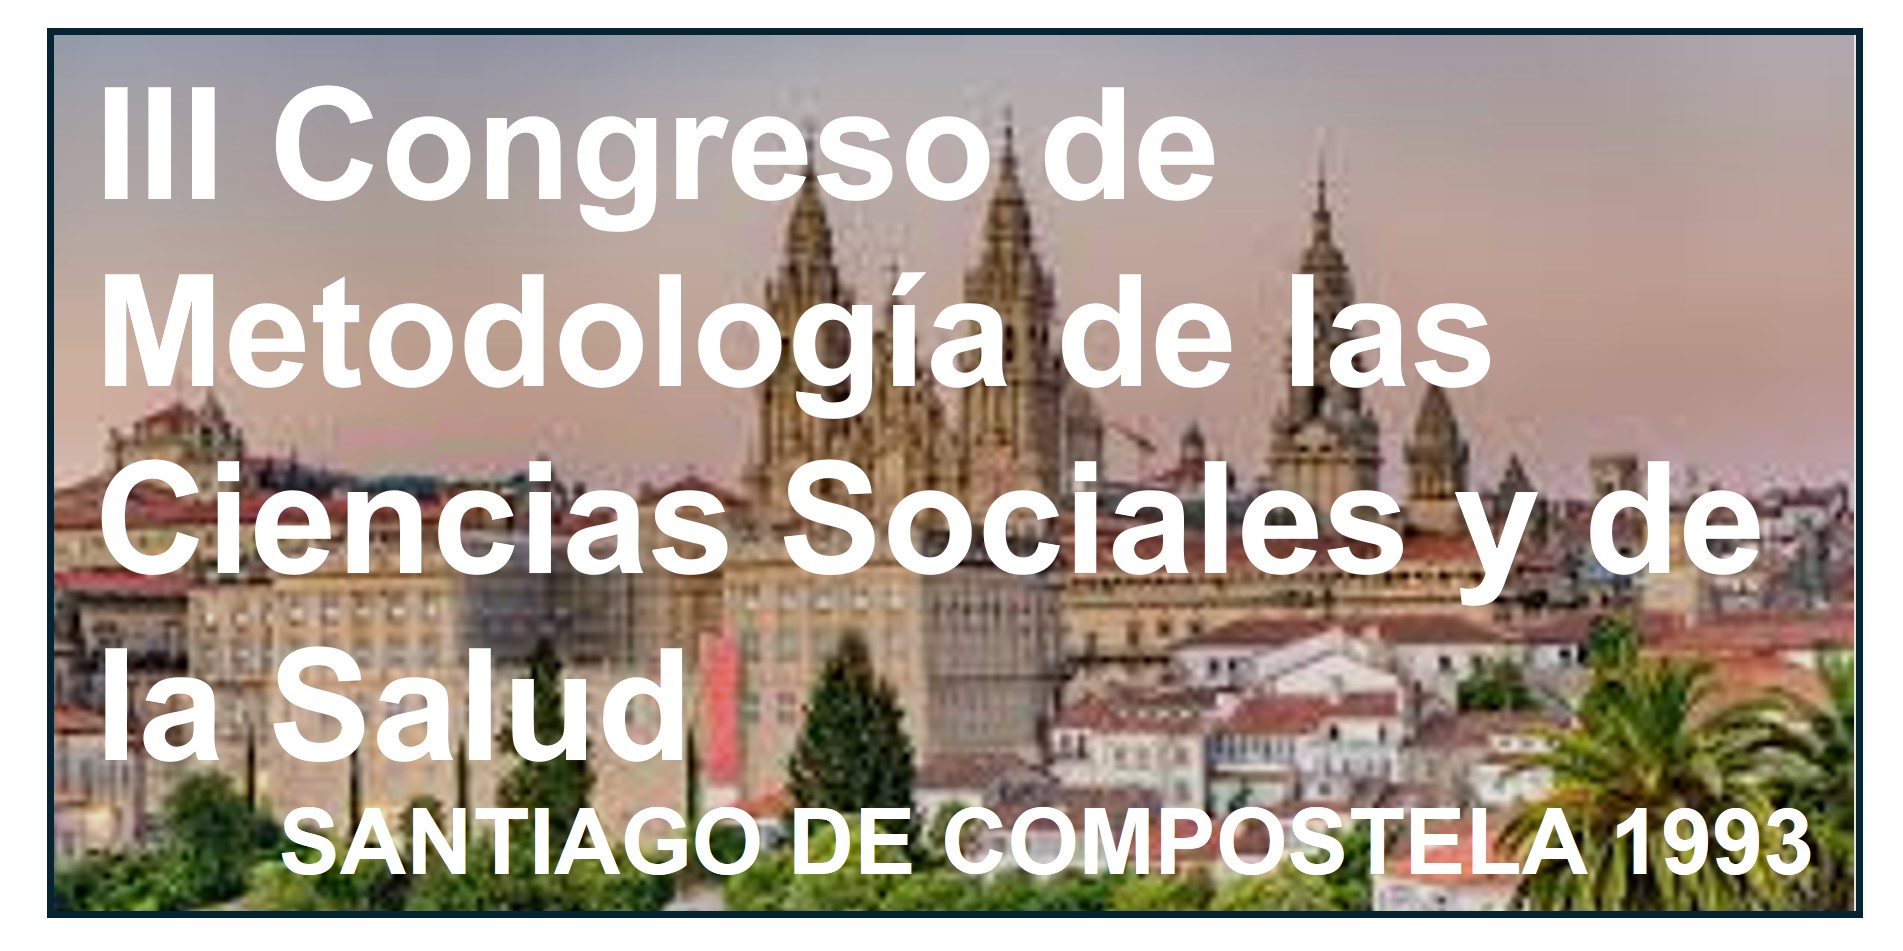    III Congreso de Metodología de las Ciencias Sociales y de la Salud